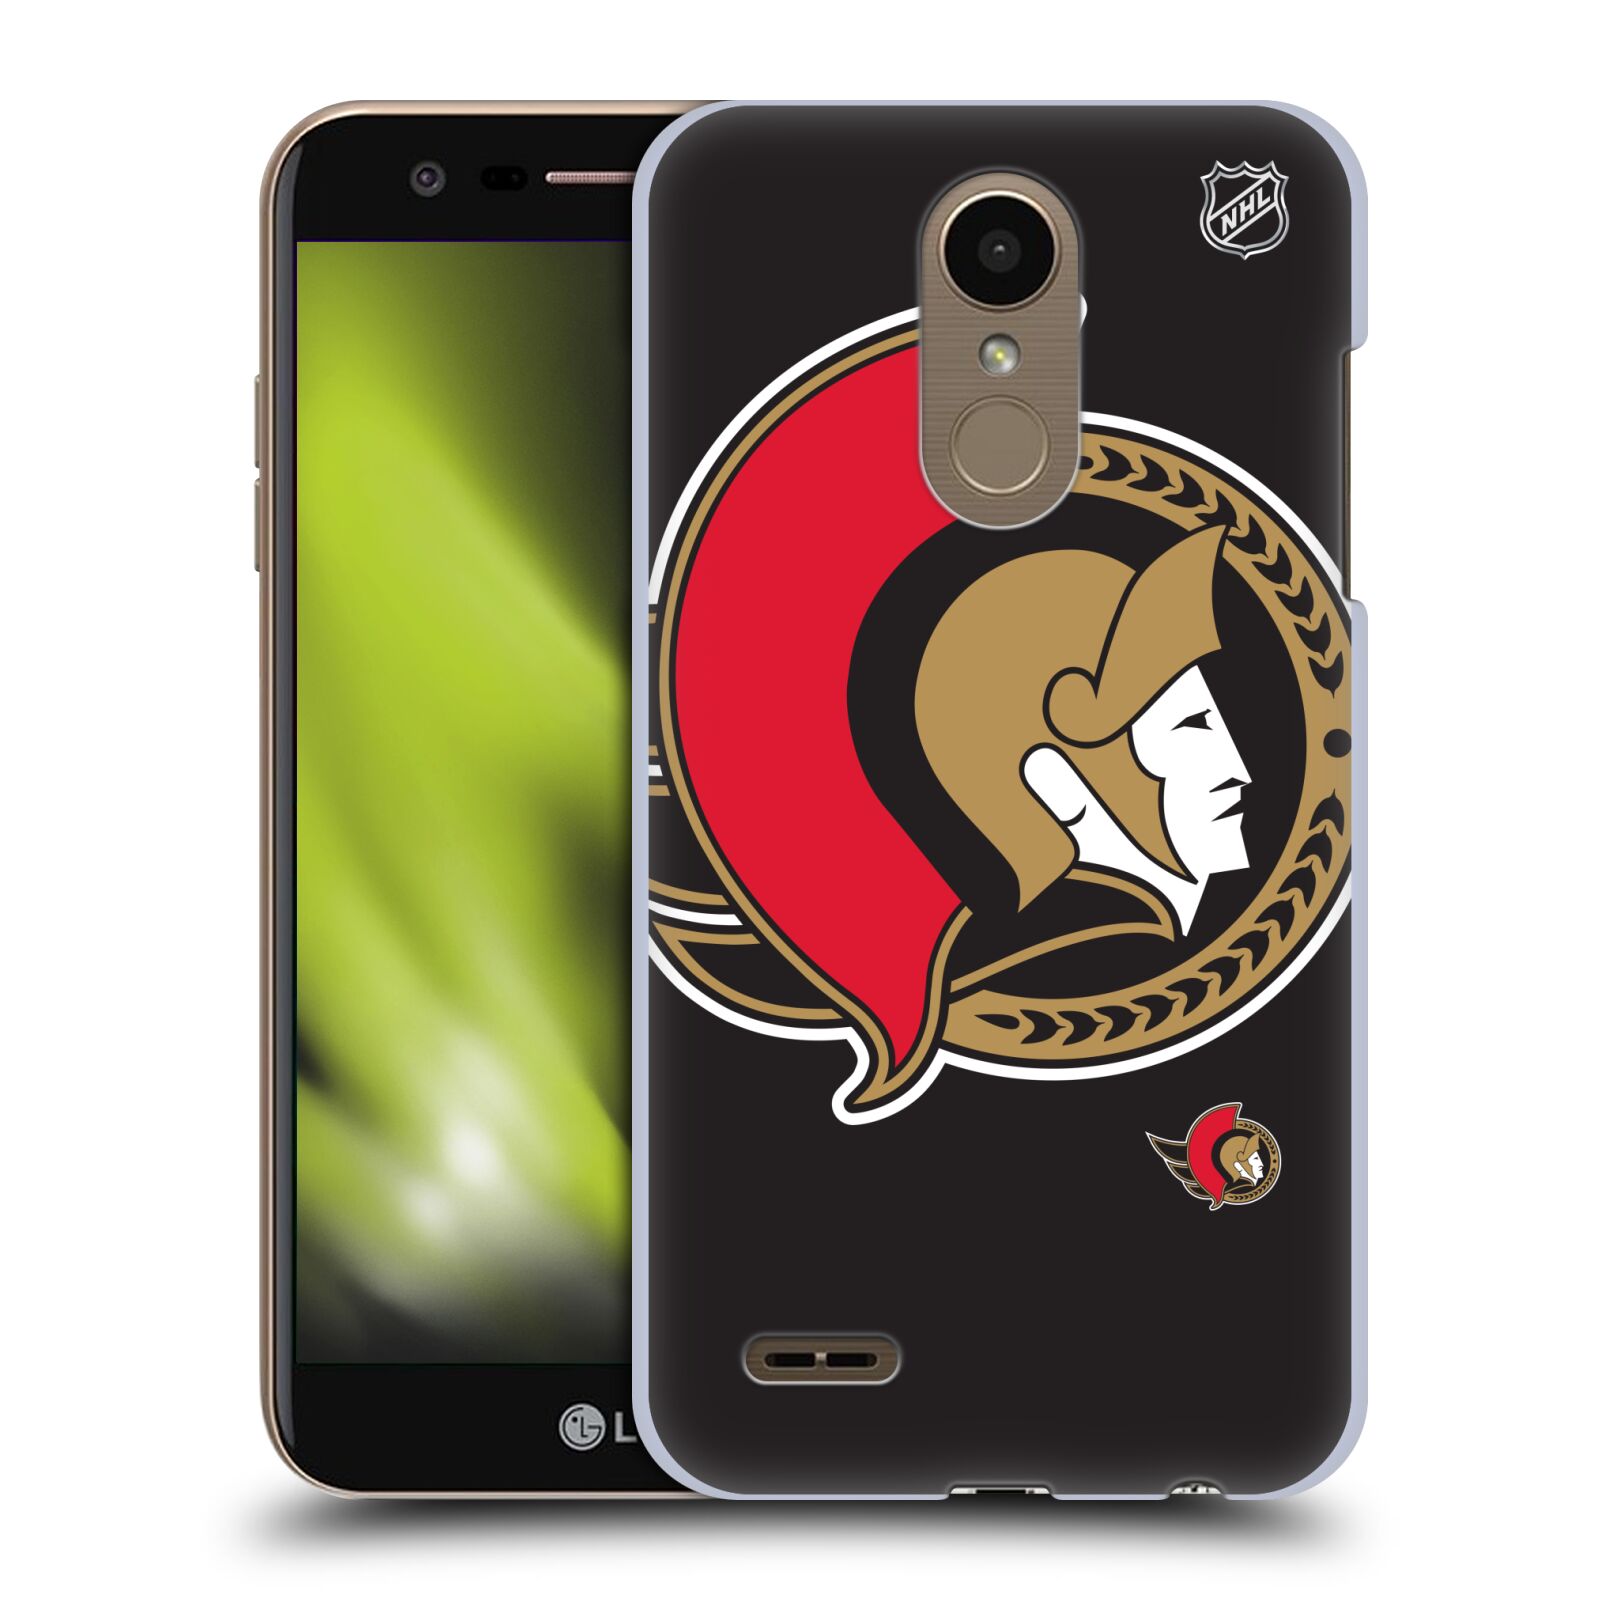 Pouzdro na mobil LG K10 2018 - HEAD CASE - Hokej NHL - Ottawa Senators - Velký znak